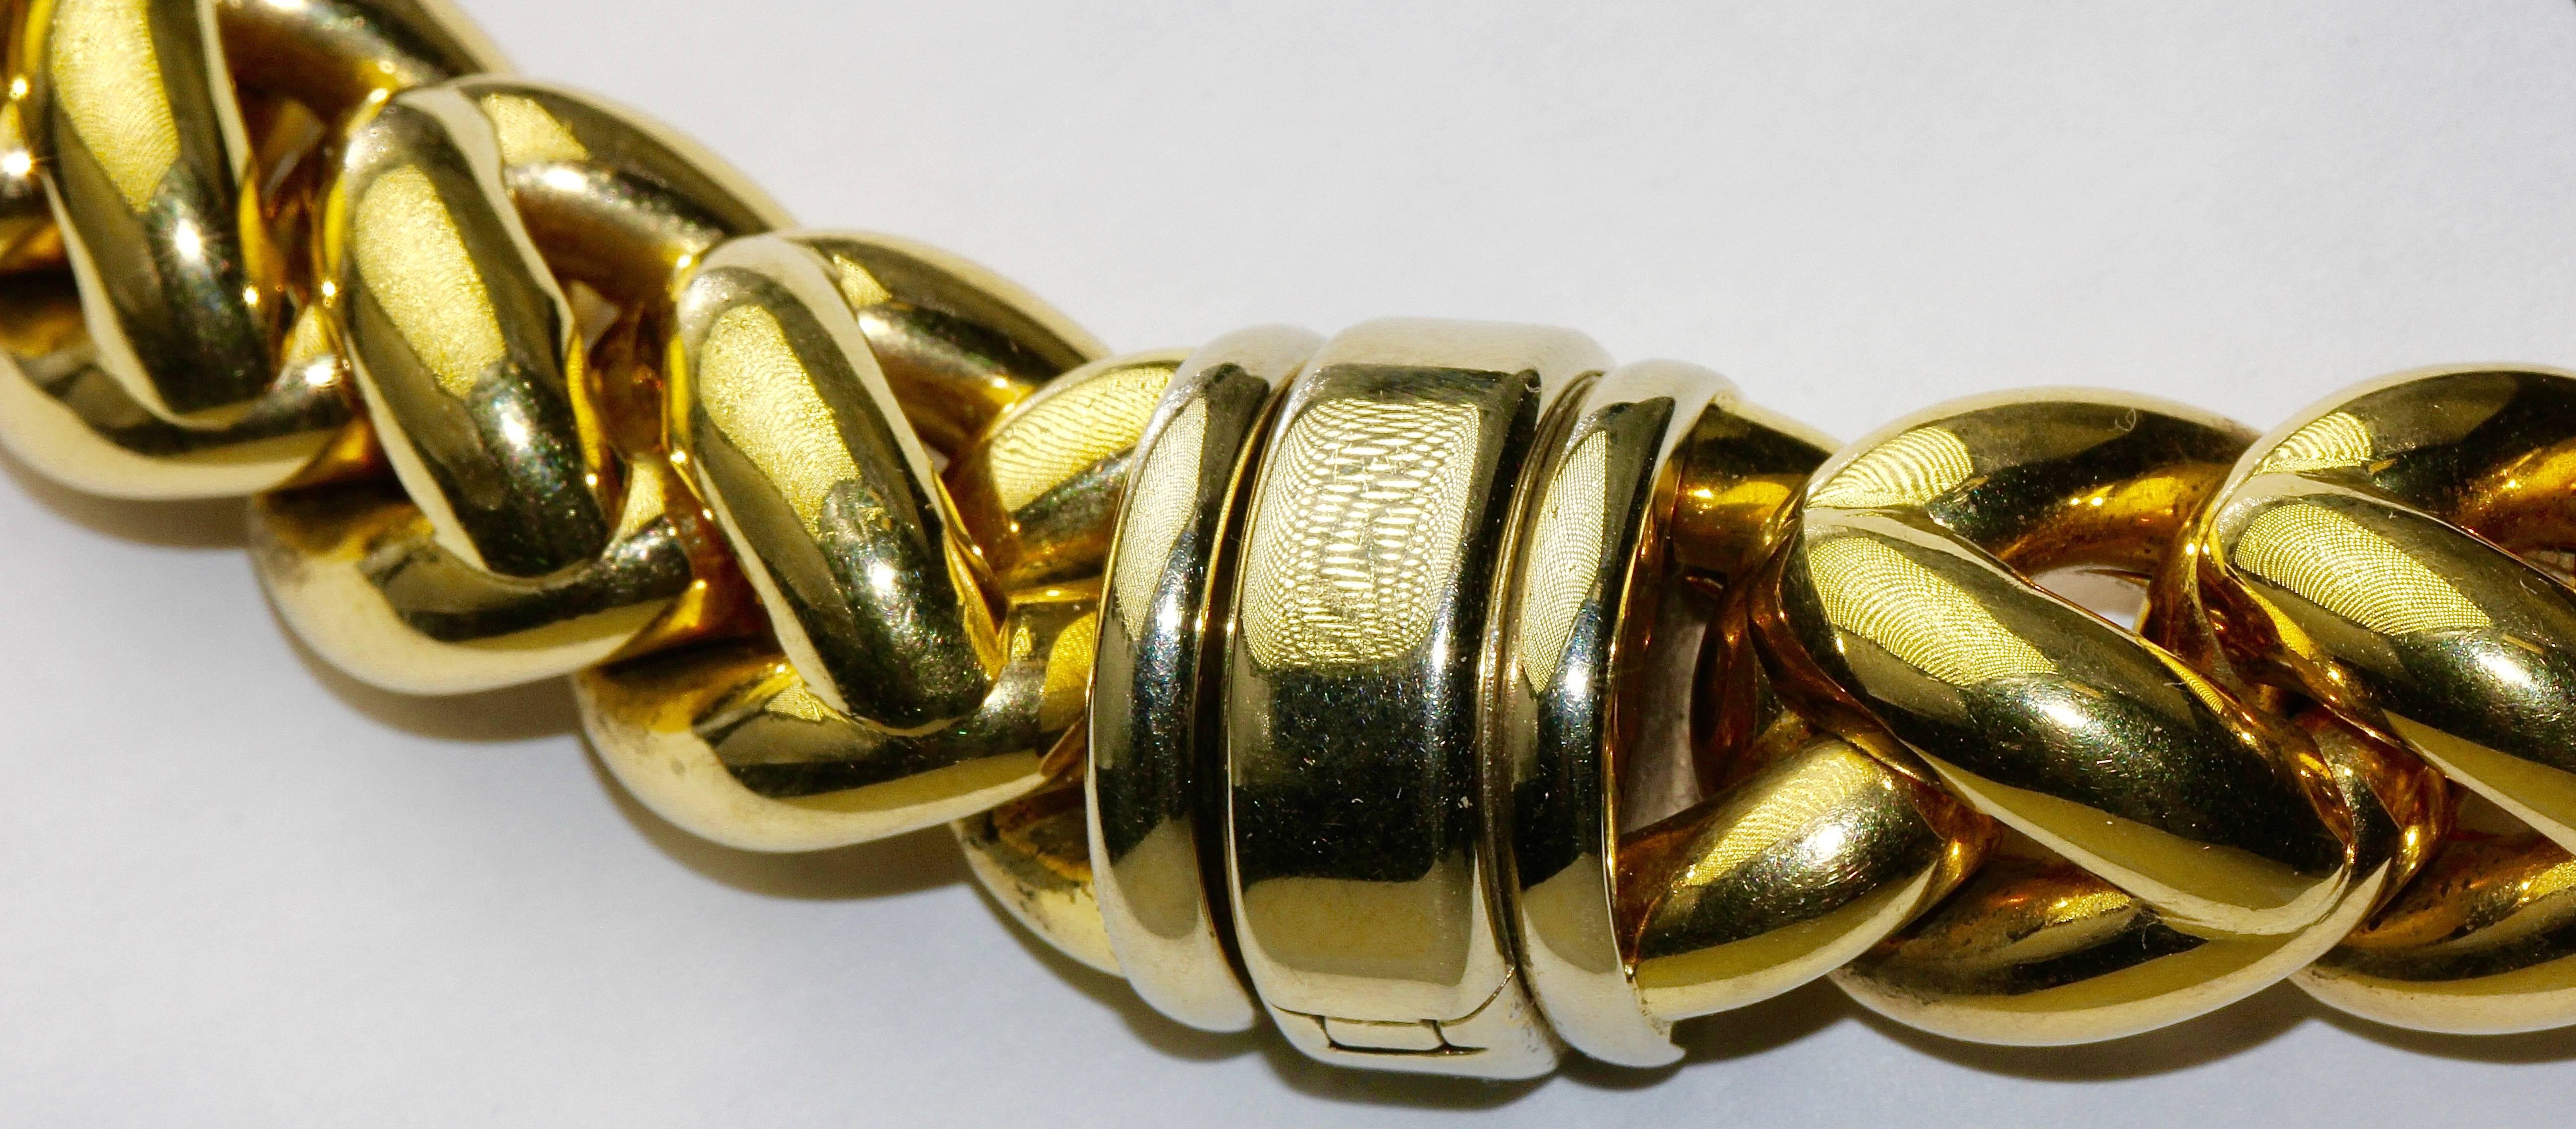 18 karat gold chain